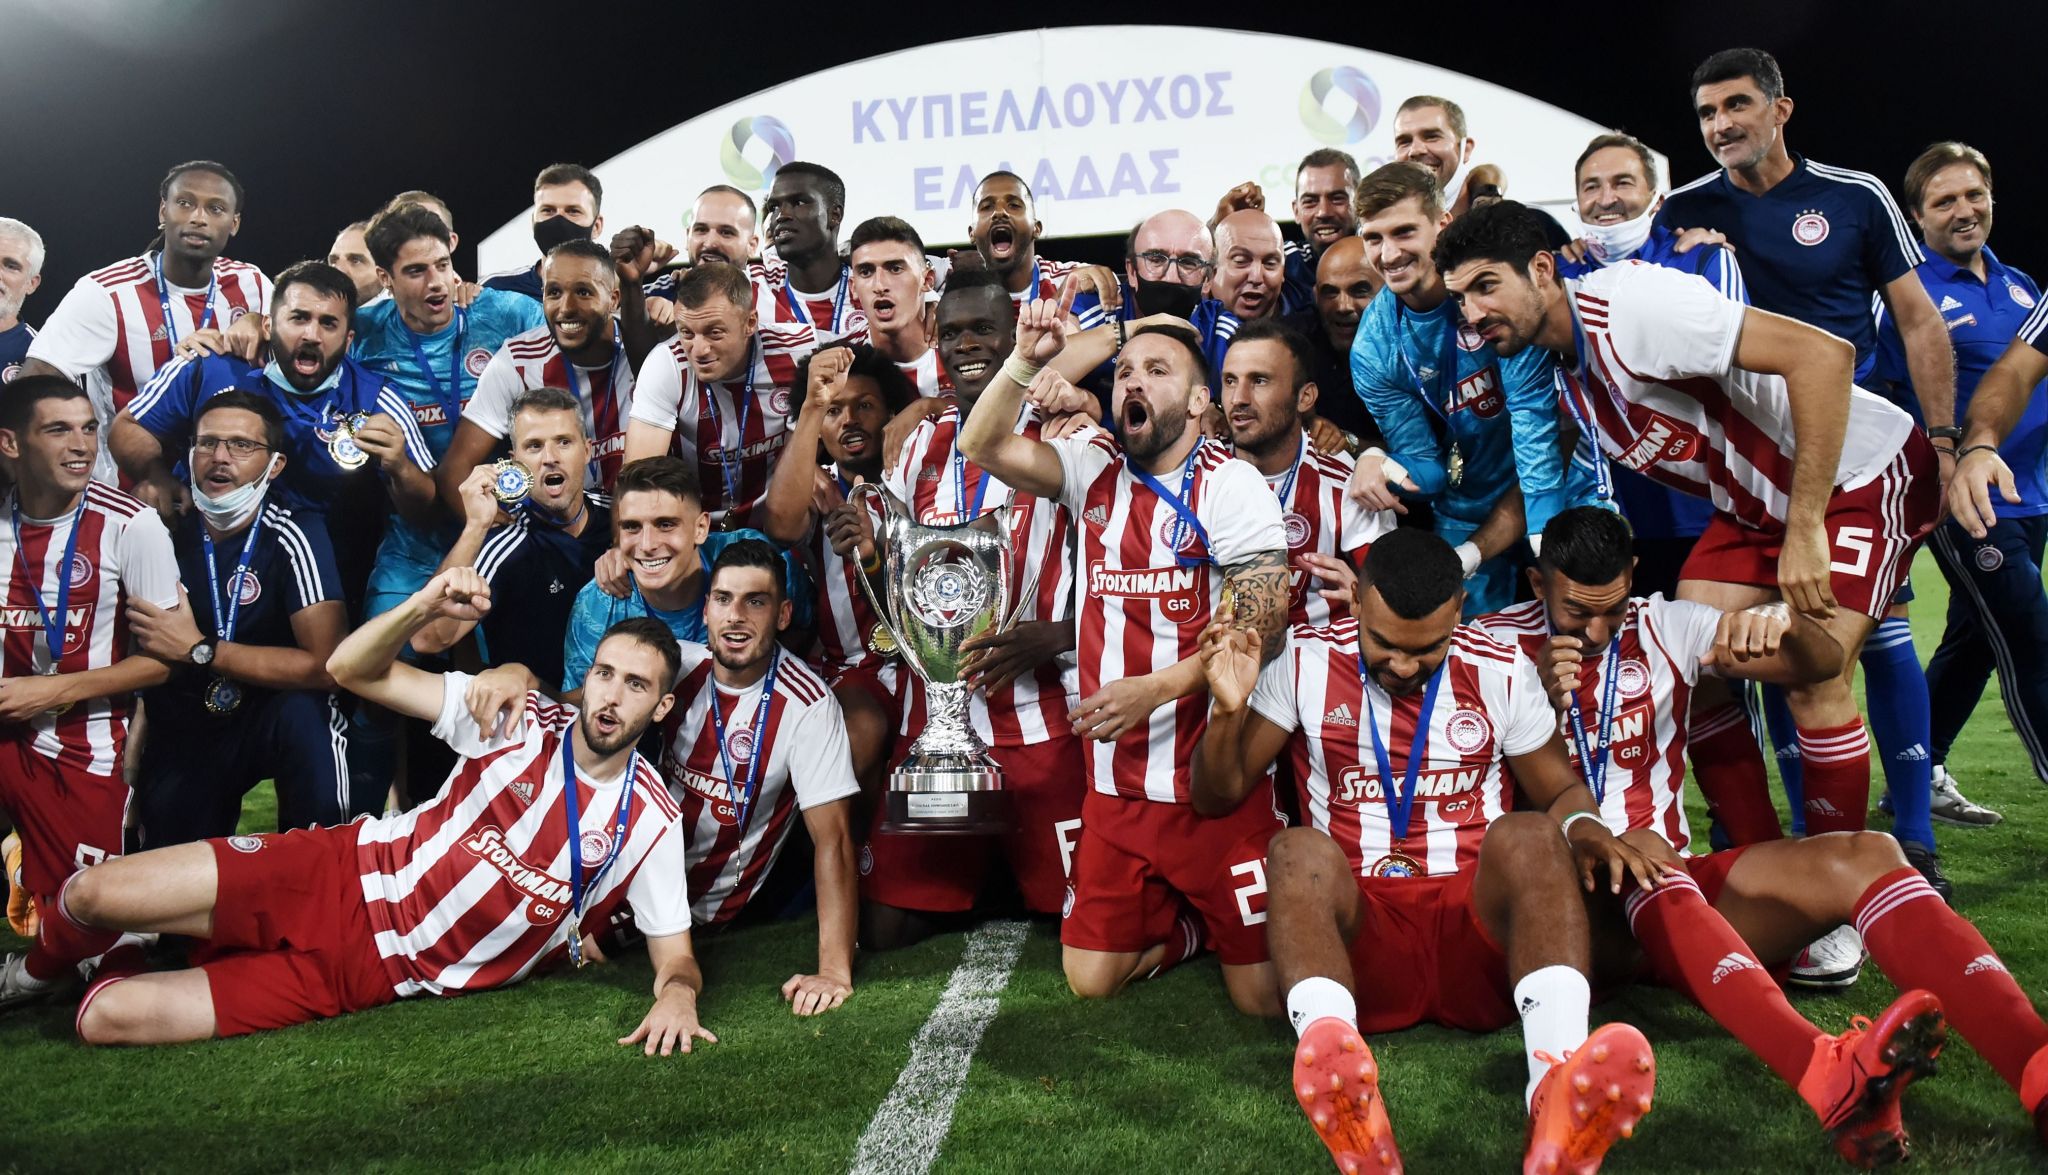 L’Olympiacos remporte le doublé 2019/20 en Grèce